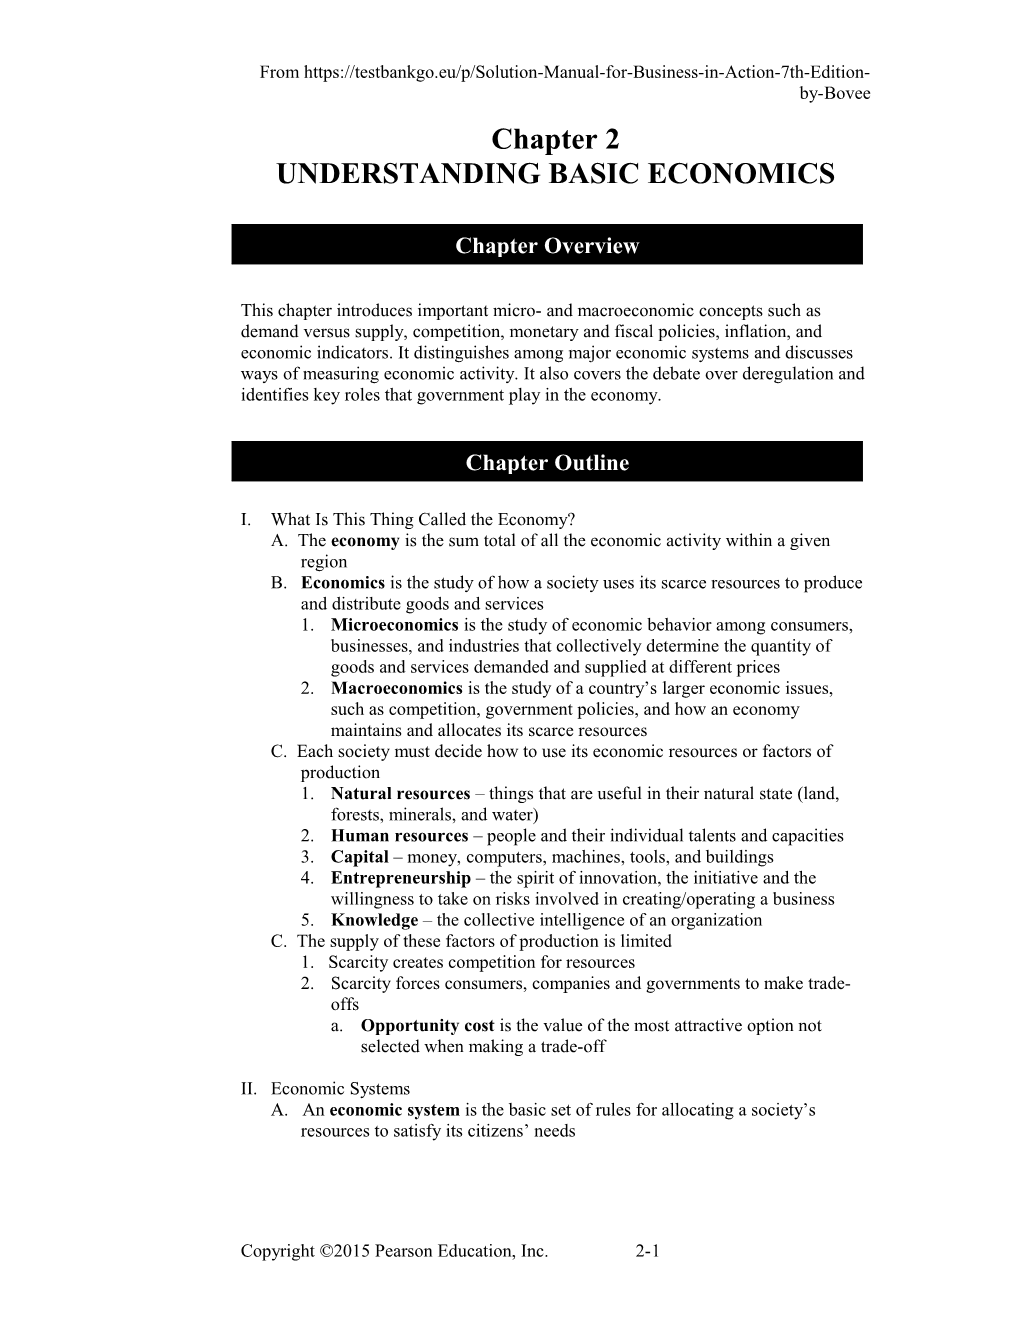 Understandingbasic Economics